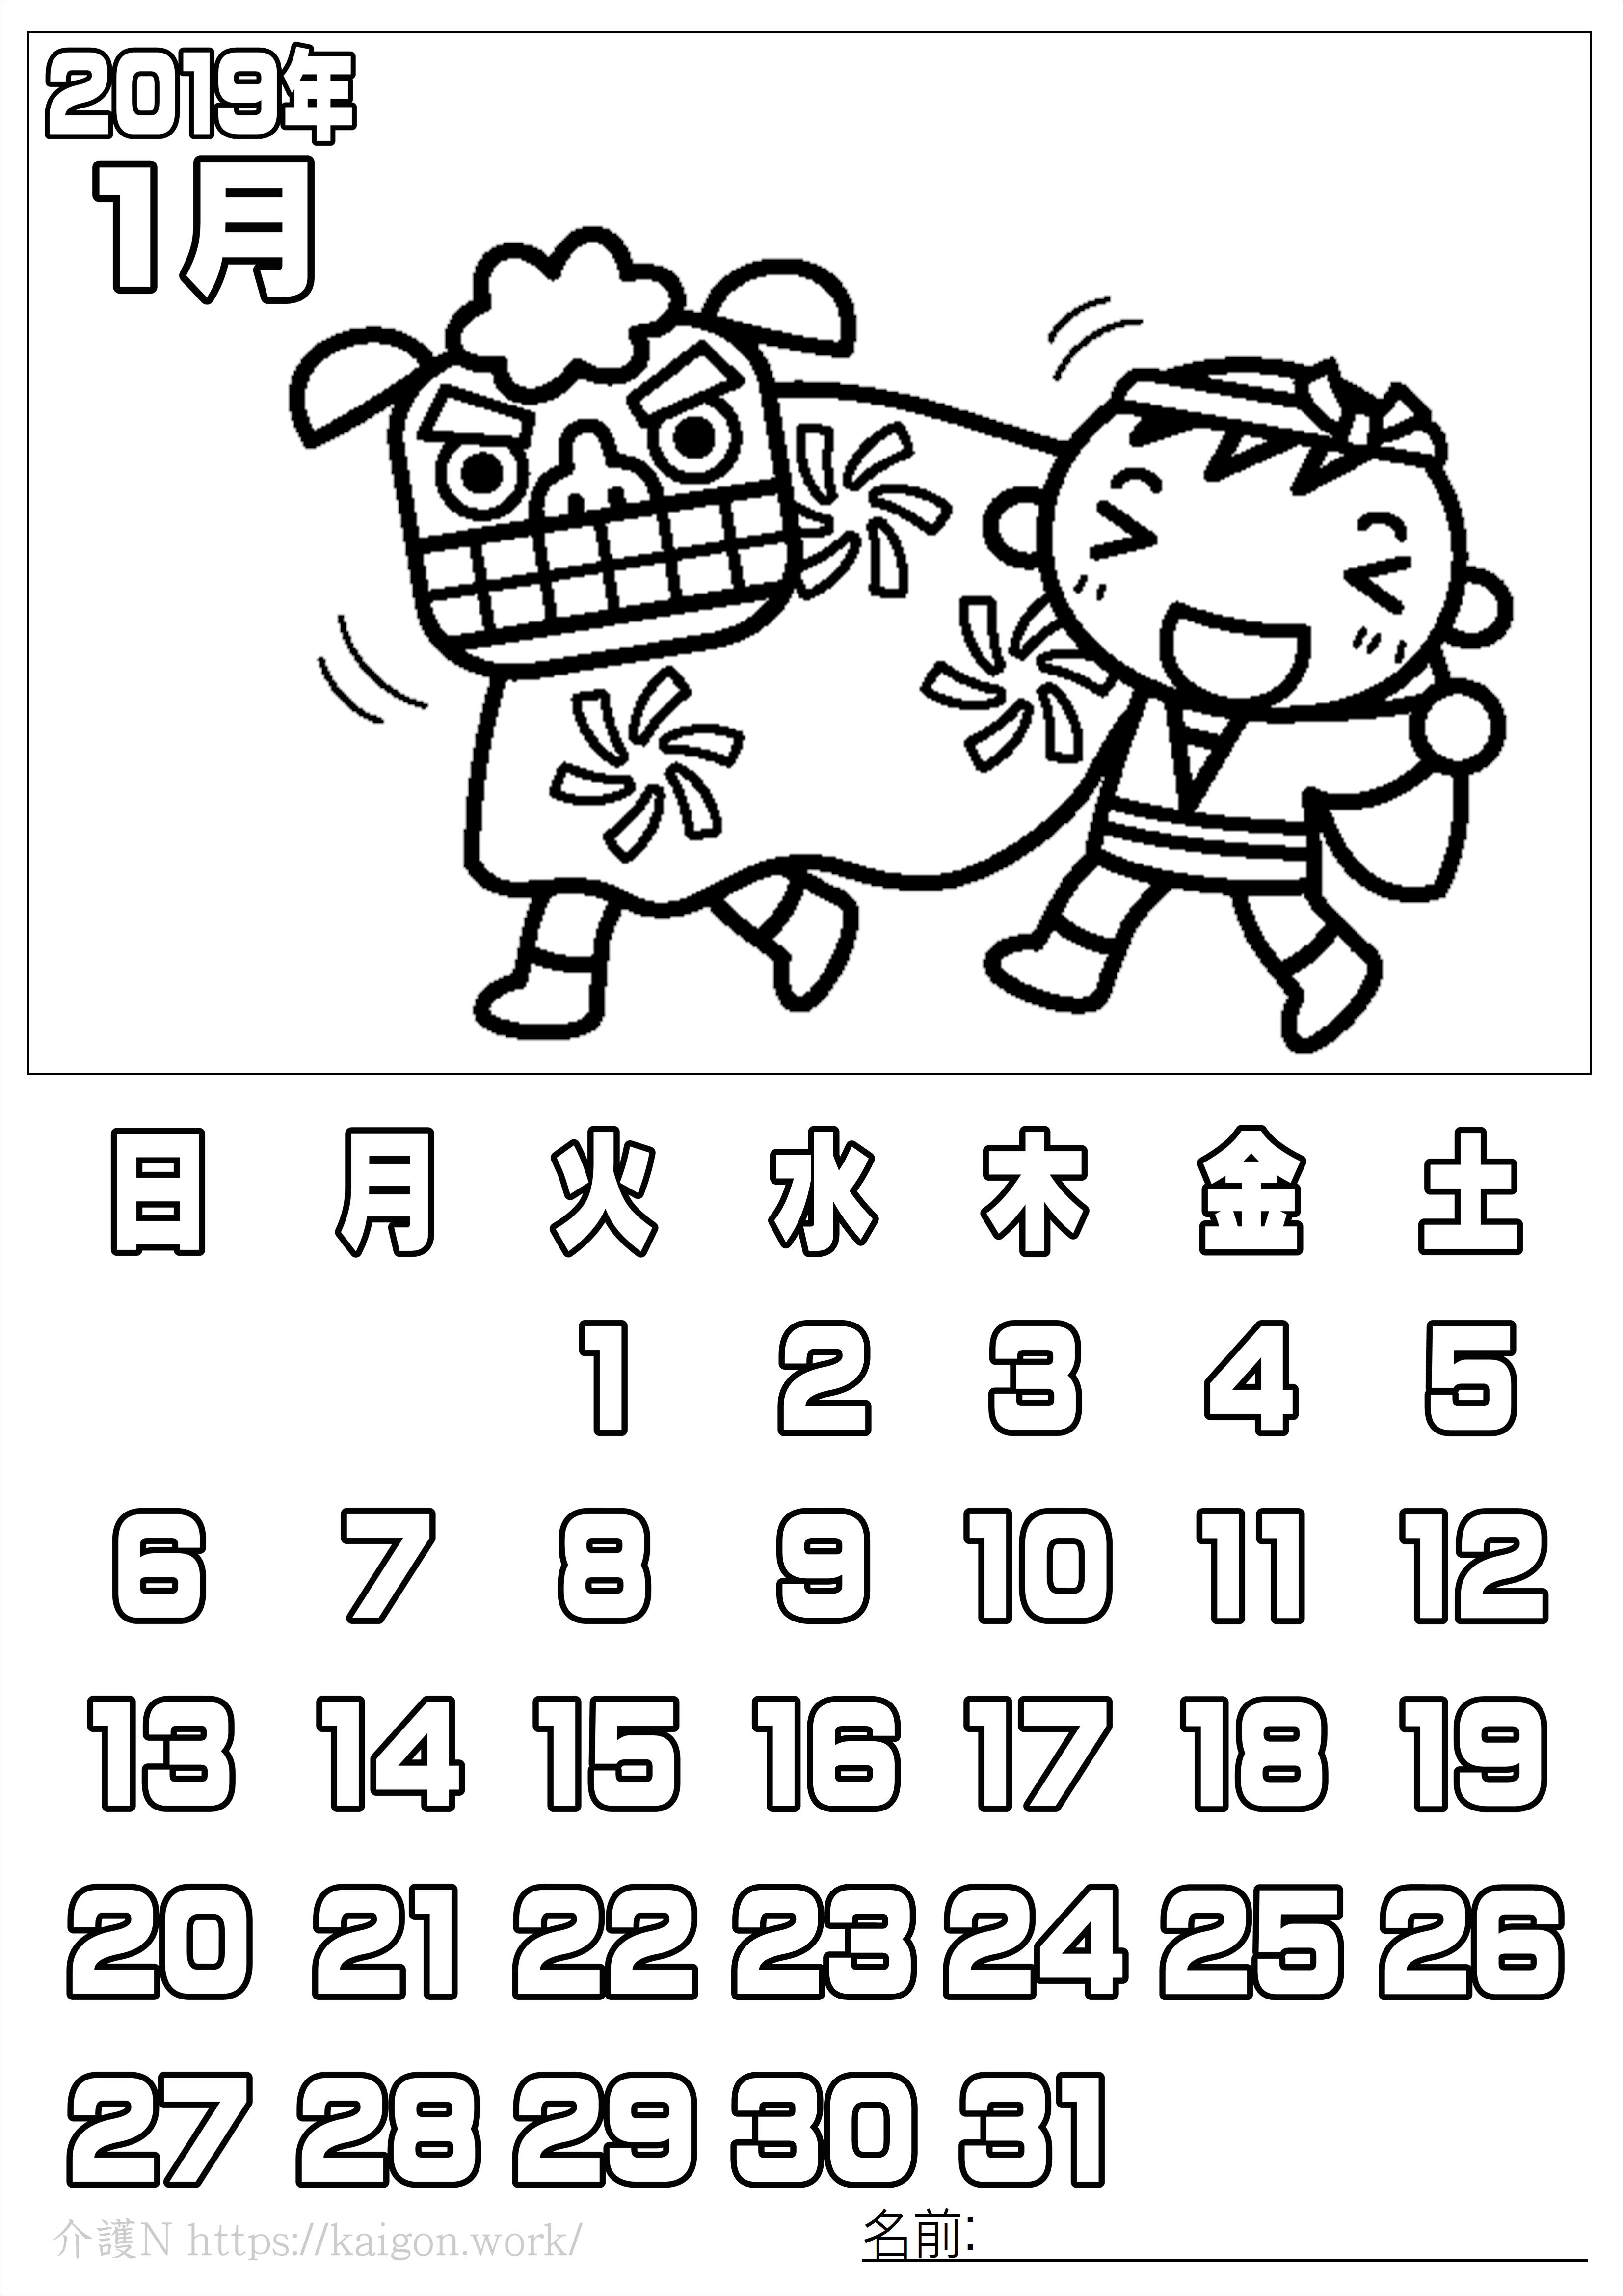 天文学 歯車 写真撮影 塗り絵 カレンダー 18 9 月 Torisaku Jp